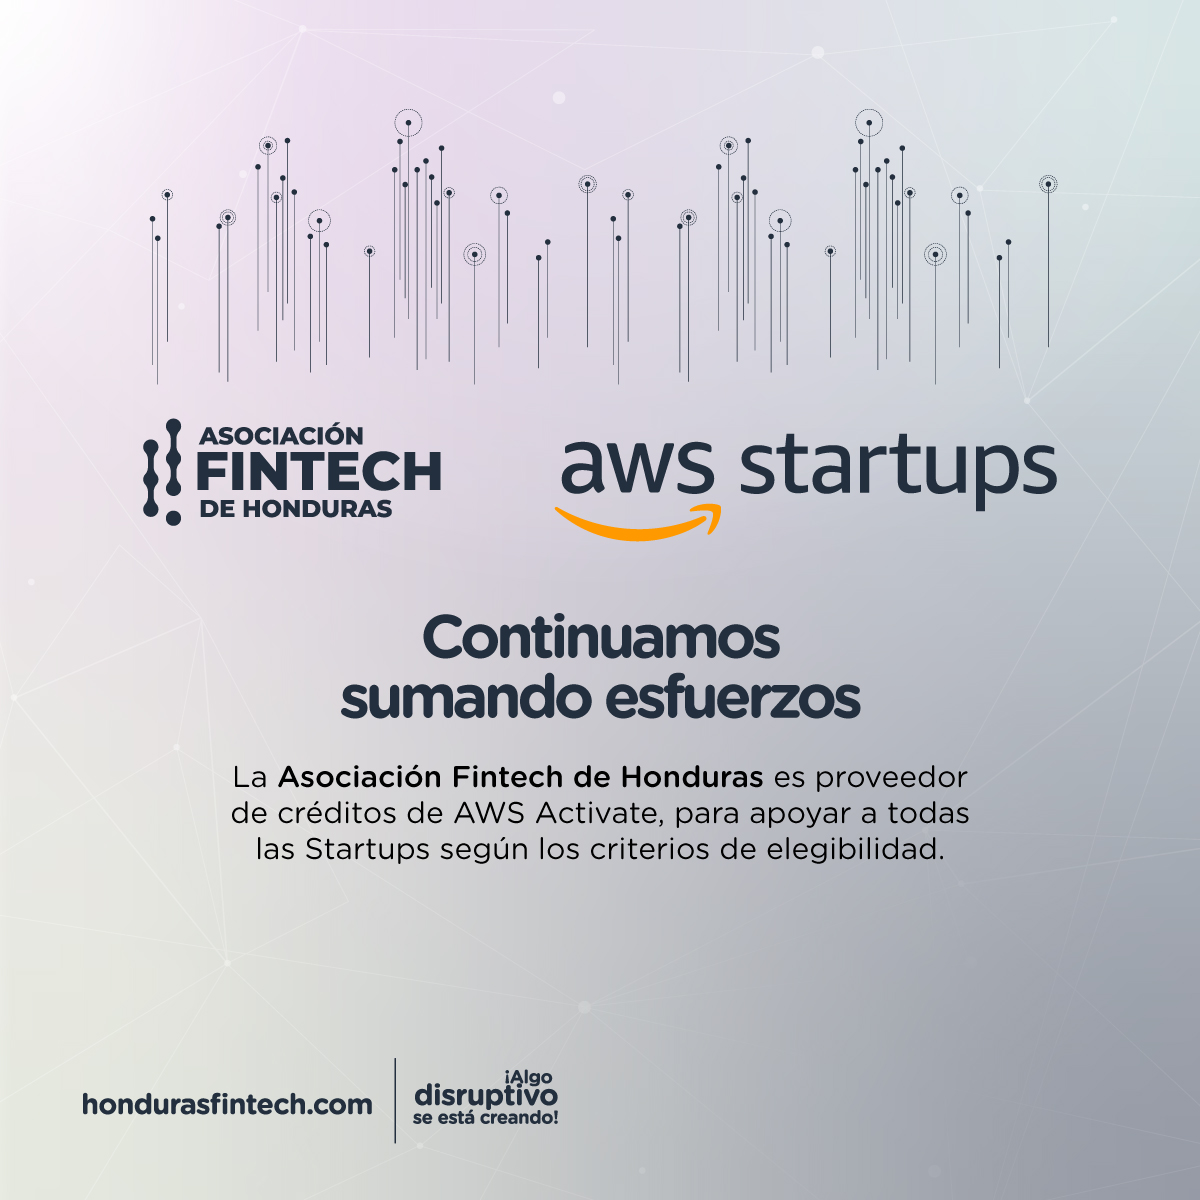 La Asociación Fintech de Honduras es proveedor de créditos de AWS Activate.